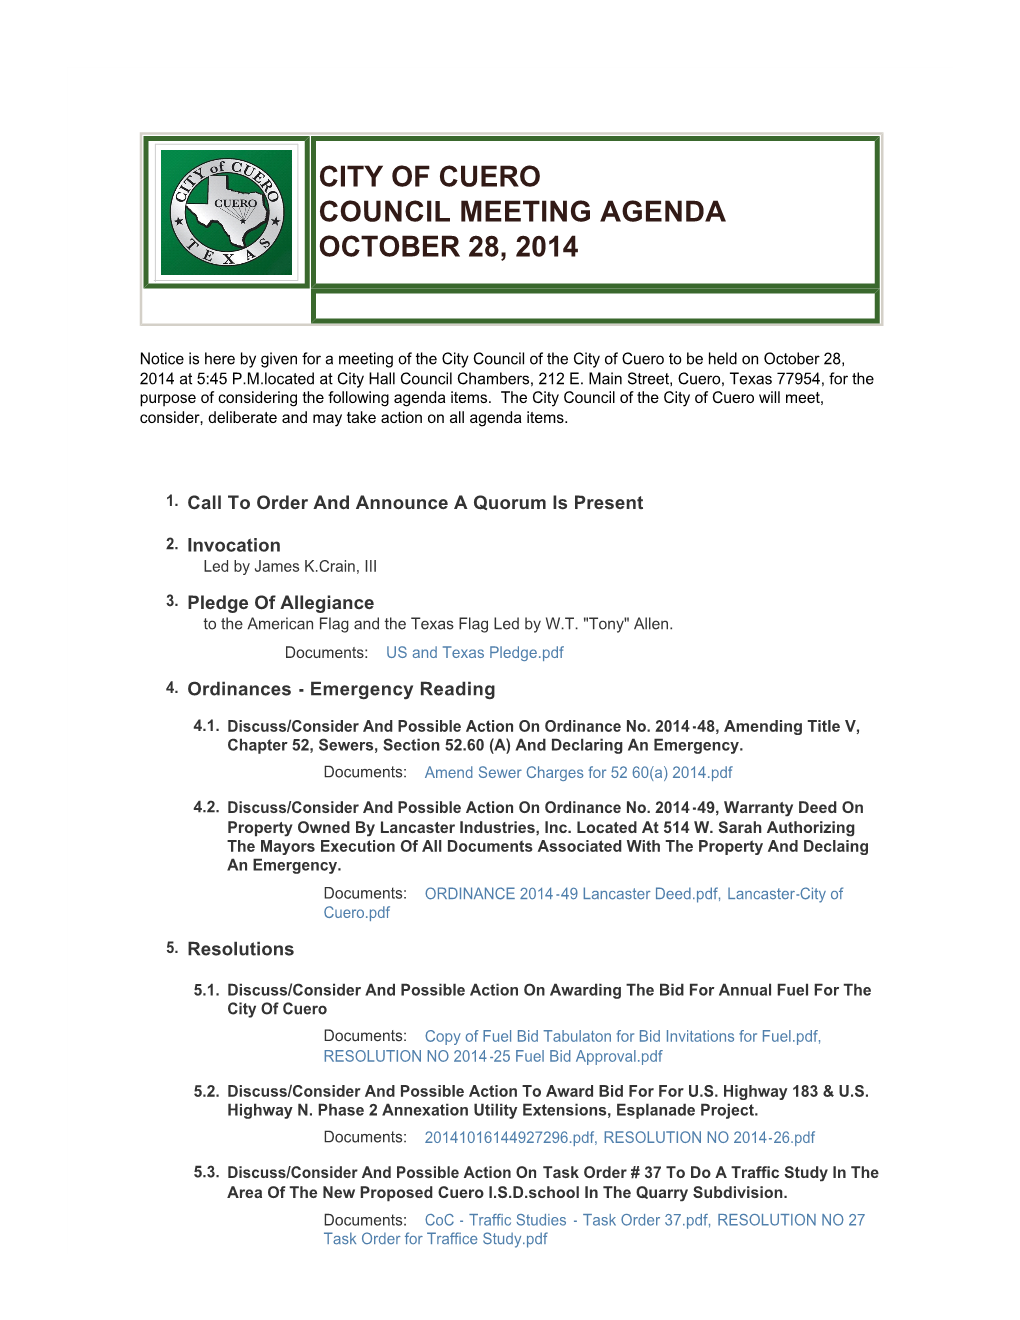 City of Cuero Council Meeting Agenda October 28, 2014